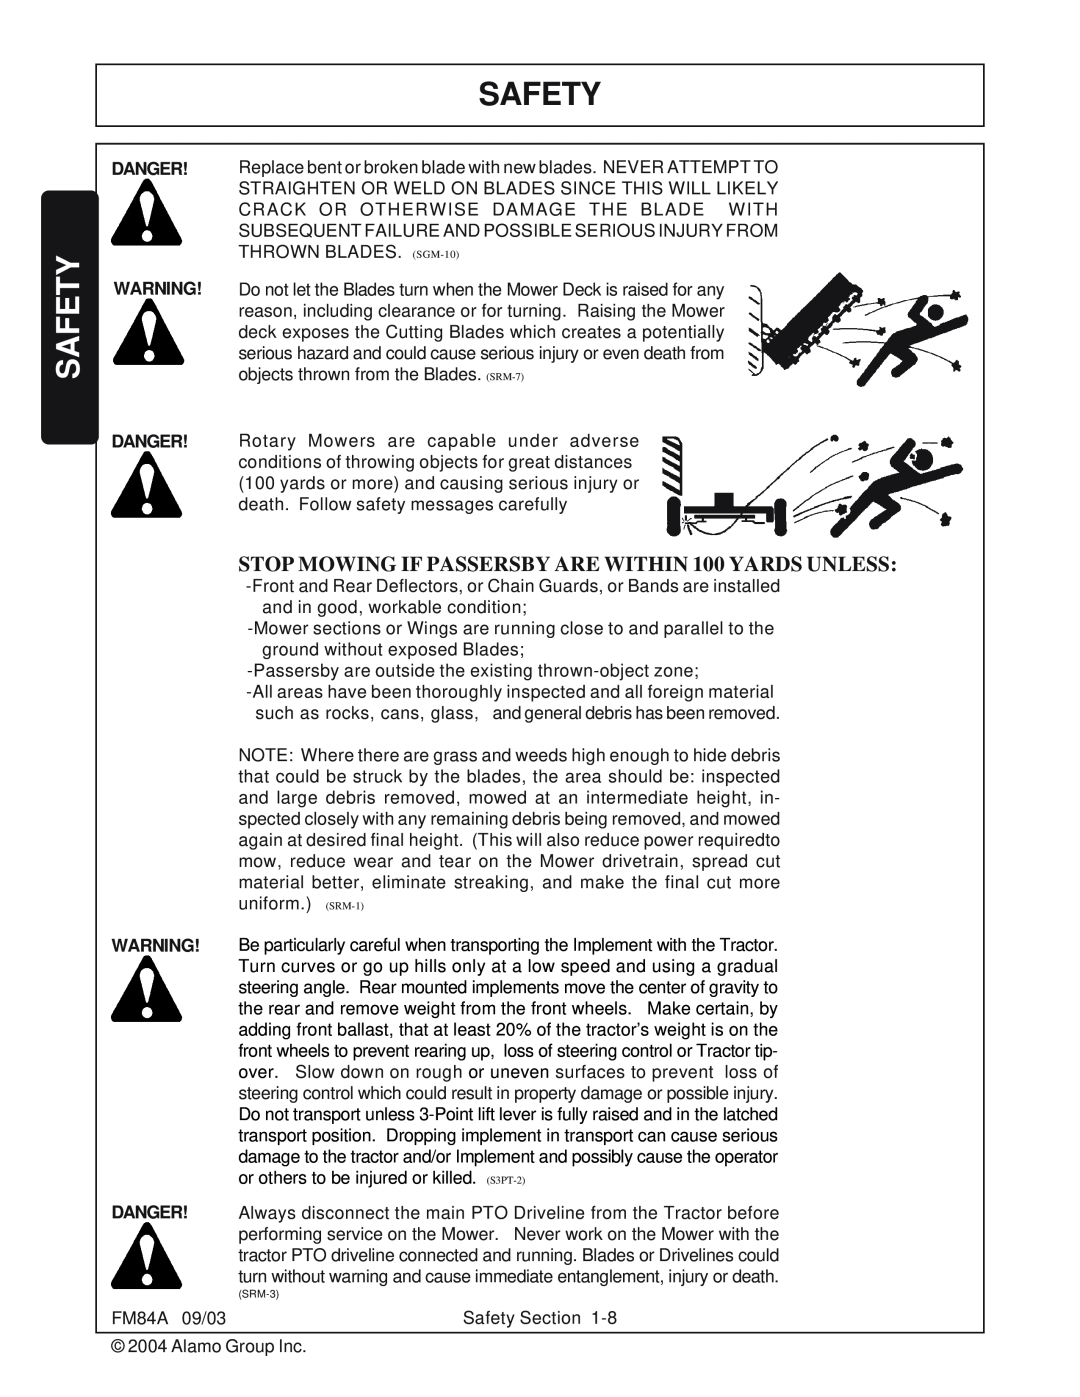 Servis-Rhino manual Safety, FM84A 09/03 